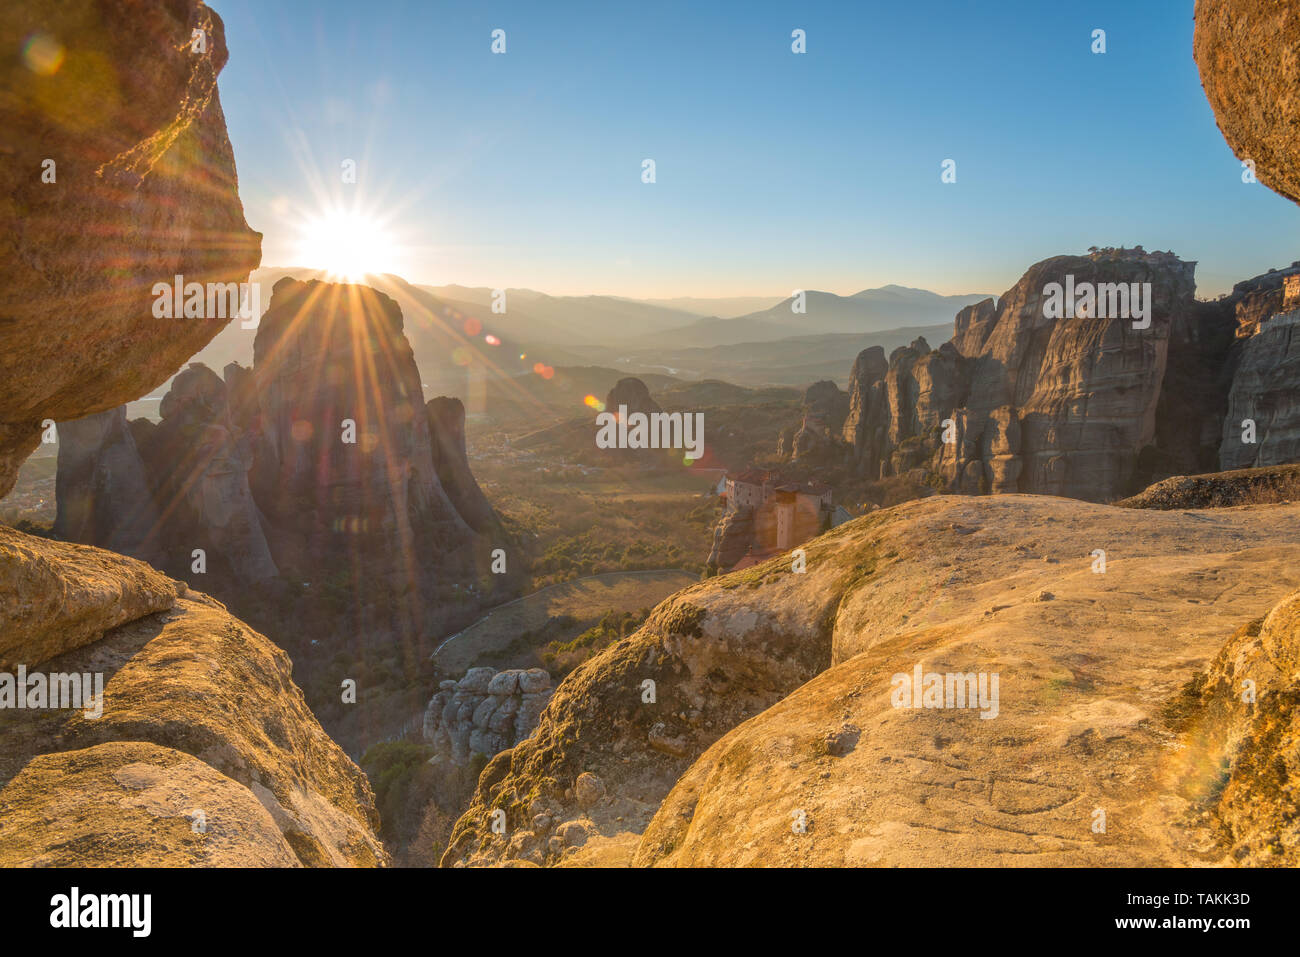 Hora dorada puesta de sol desde la puesta en rocas de Meteora, Grecia, con vistas Roussanou y Grand monasterios Meteora en el valle. Foto de stock